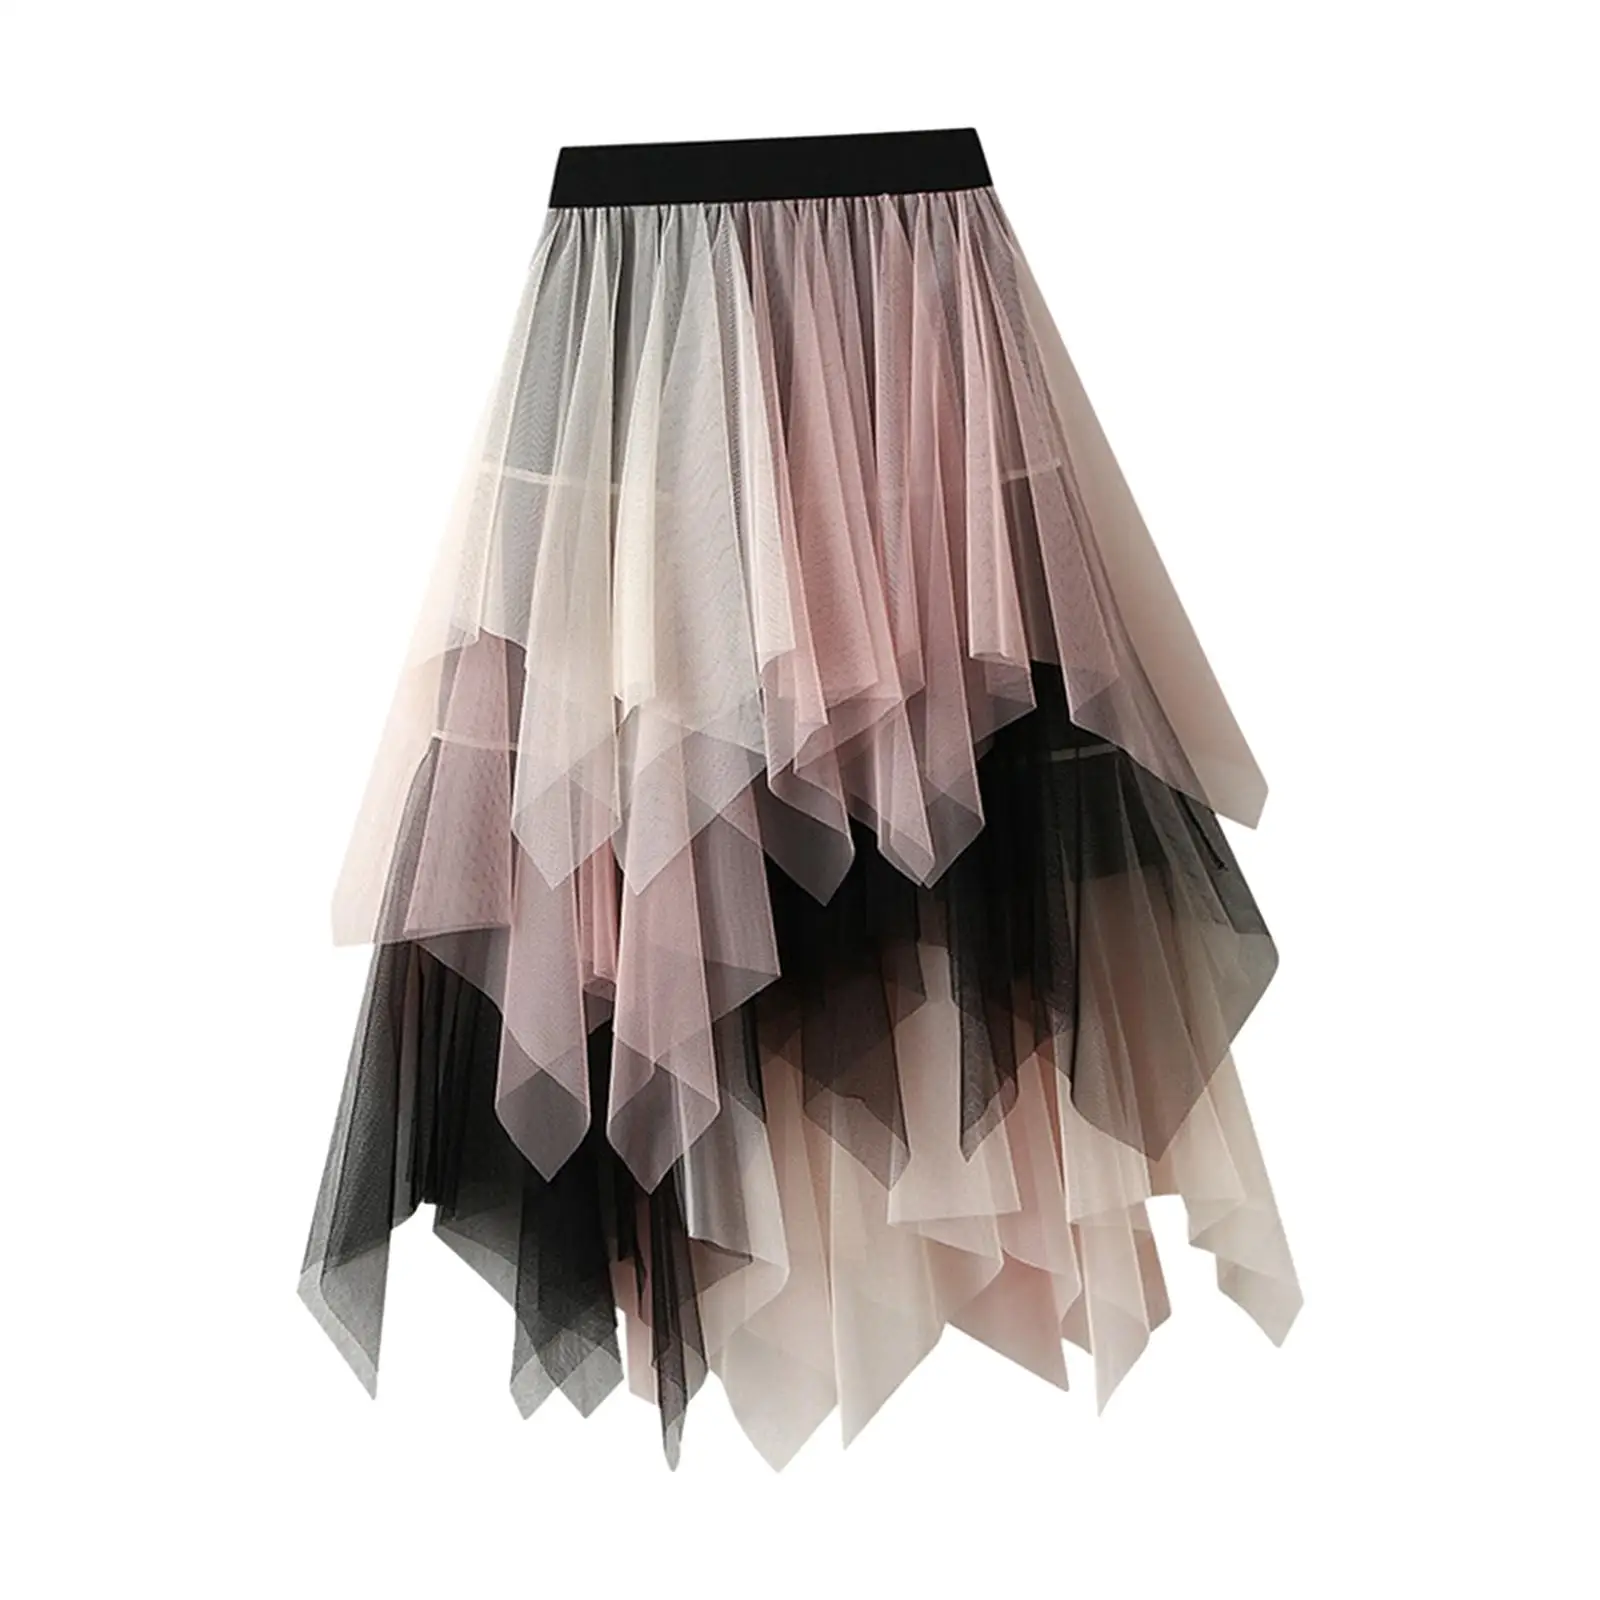 Tulle Skirts for Women Tutu Skirt MIDI Length Trendy Dress Mesh Layered Half Skirt Fairy Skirt for Formal Stage Performance